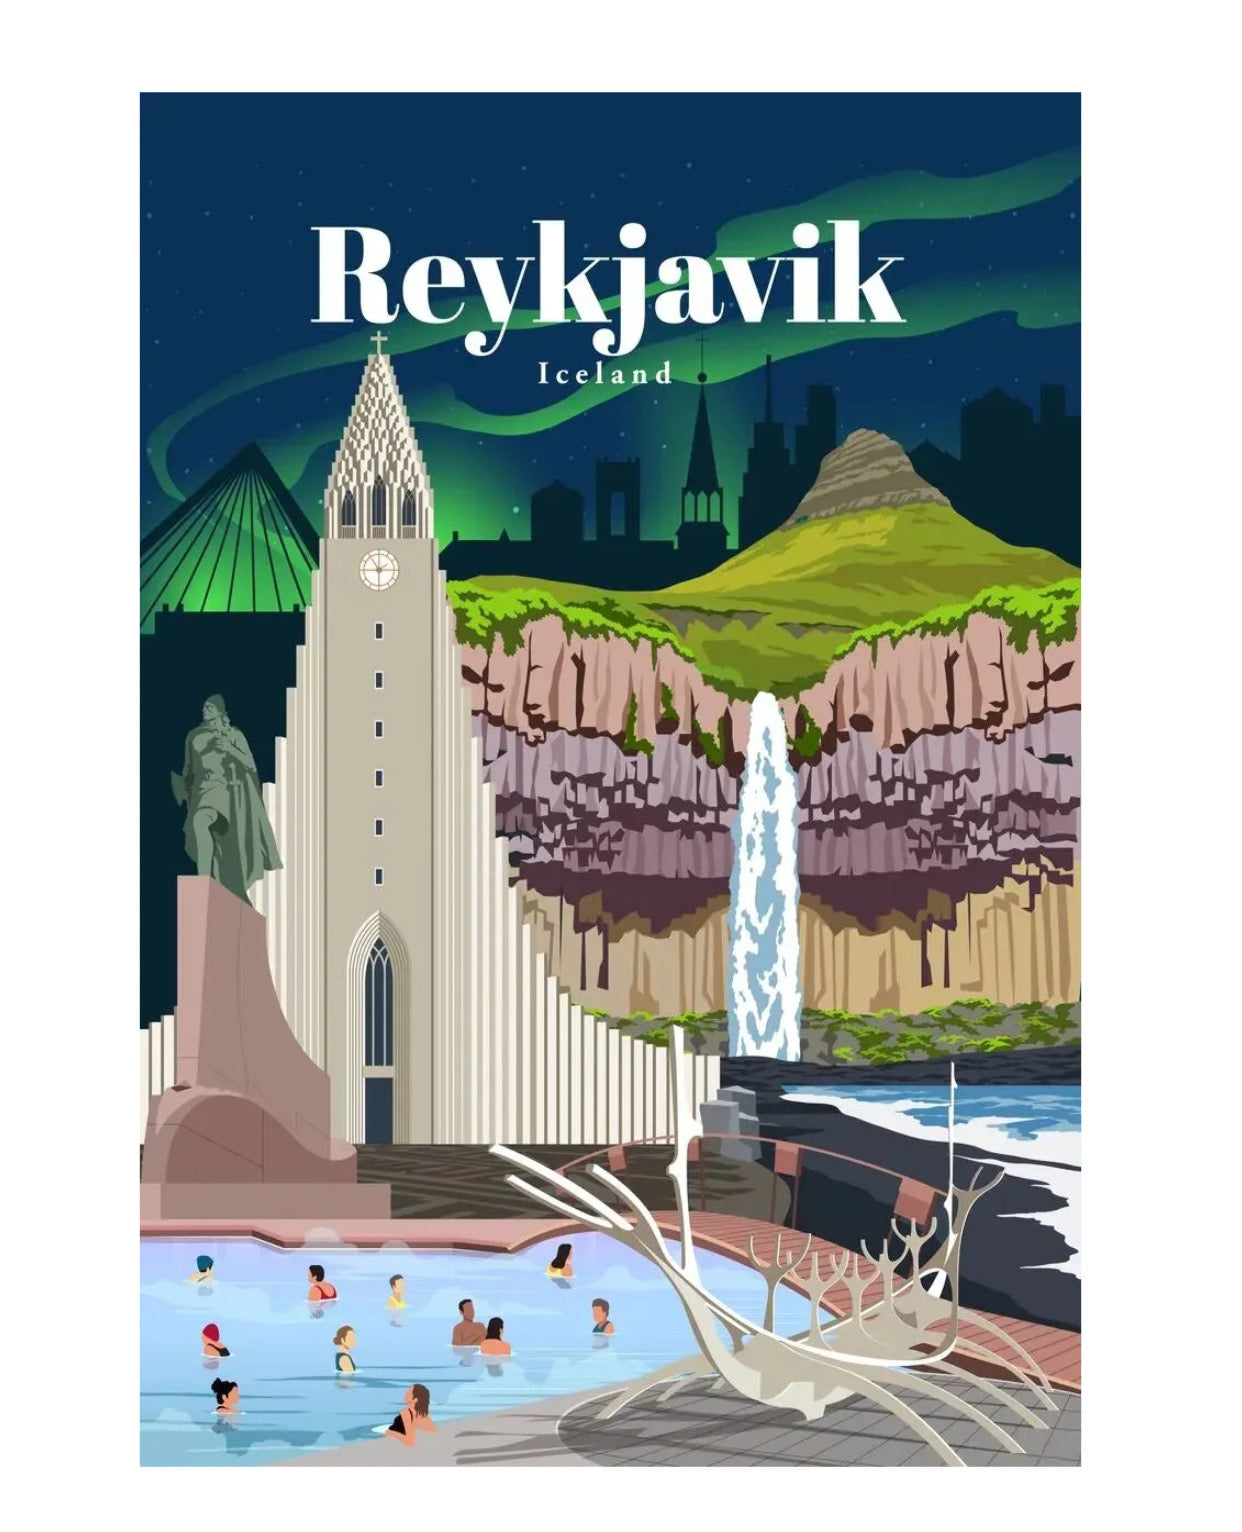 reykjavik iceland poster